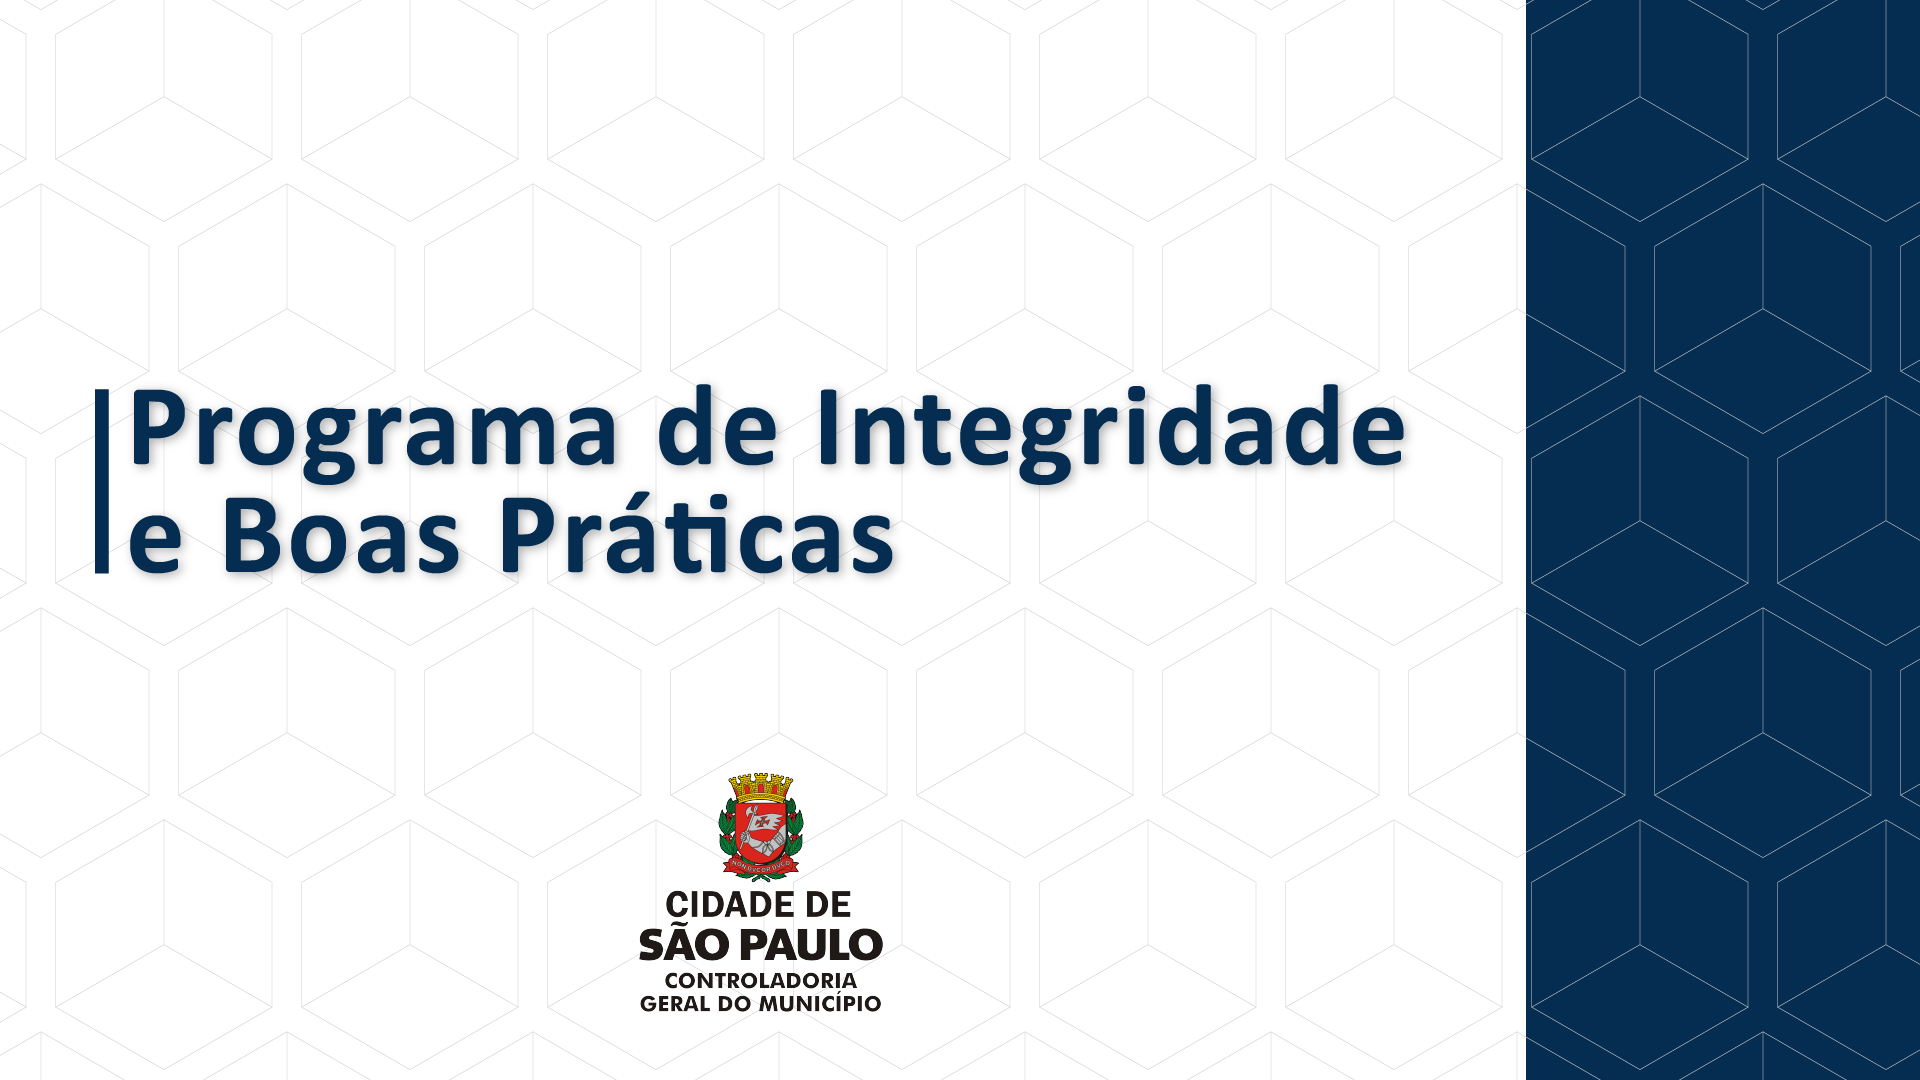 Imagem com fundo branco mostra a frase "Programa de Integridade e Boas Práticas" e logo abaixo está a logo da Prefeitura de São Paulo